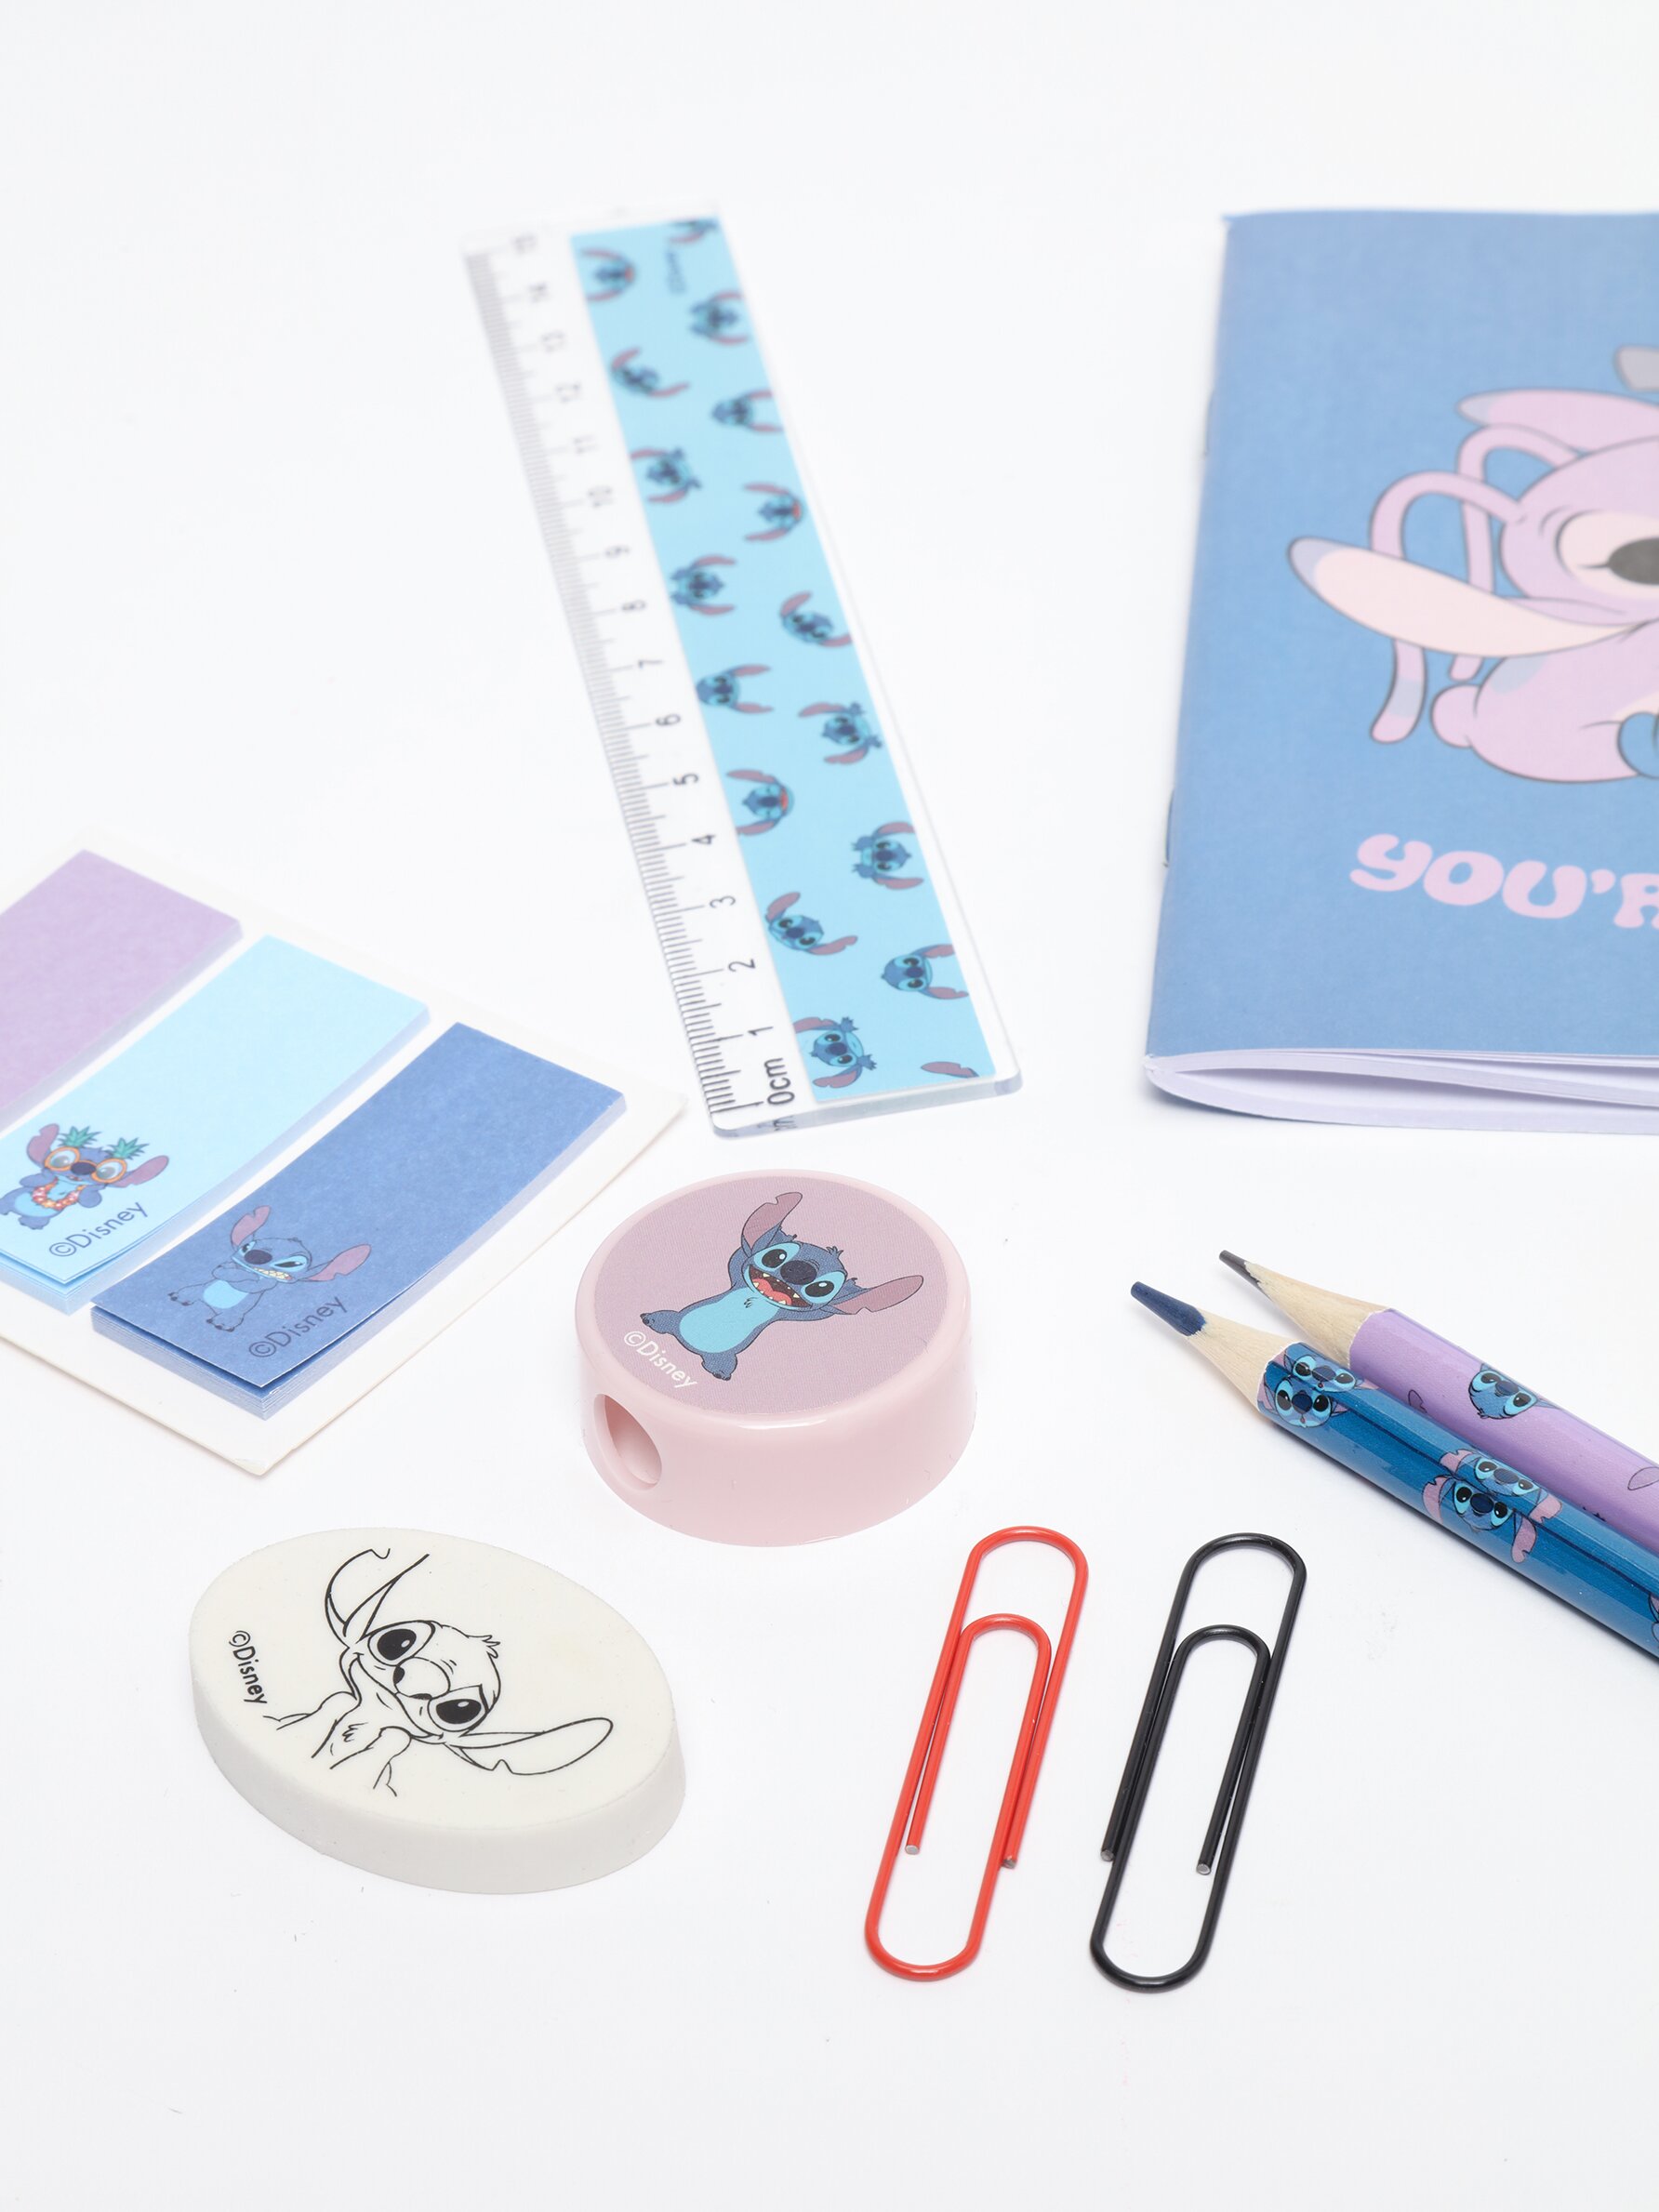 Tradineur - Set de papelería escolar de Lilo & Stitch con estuche, libreta,  2 lápices, afila lápiz, goma de borrar, regla, marca